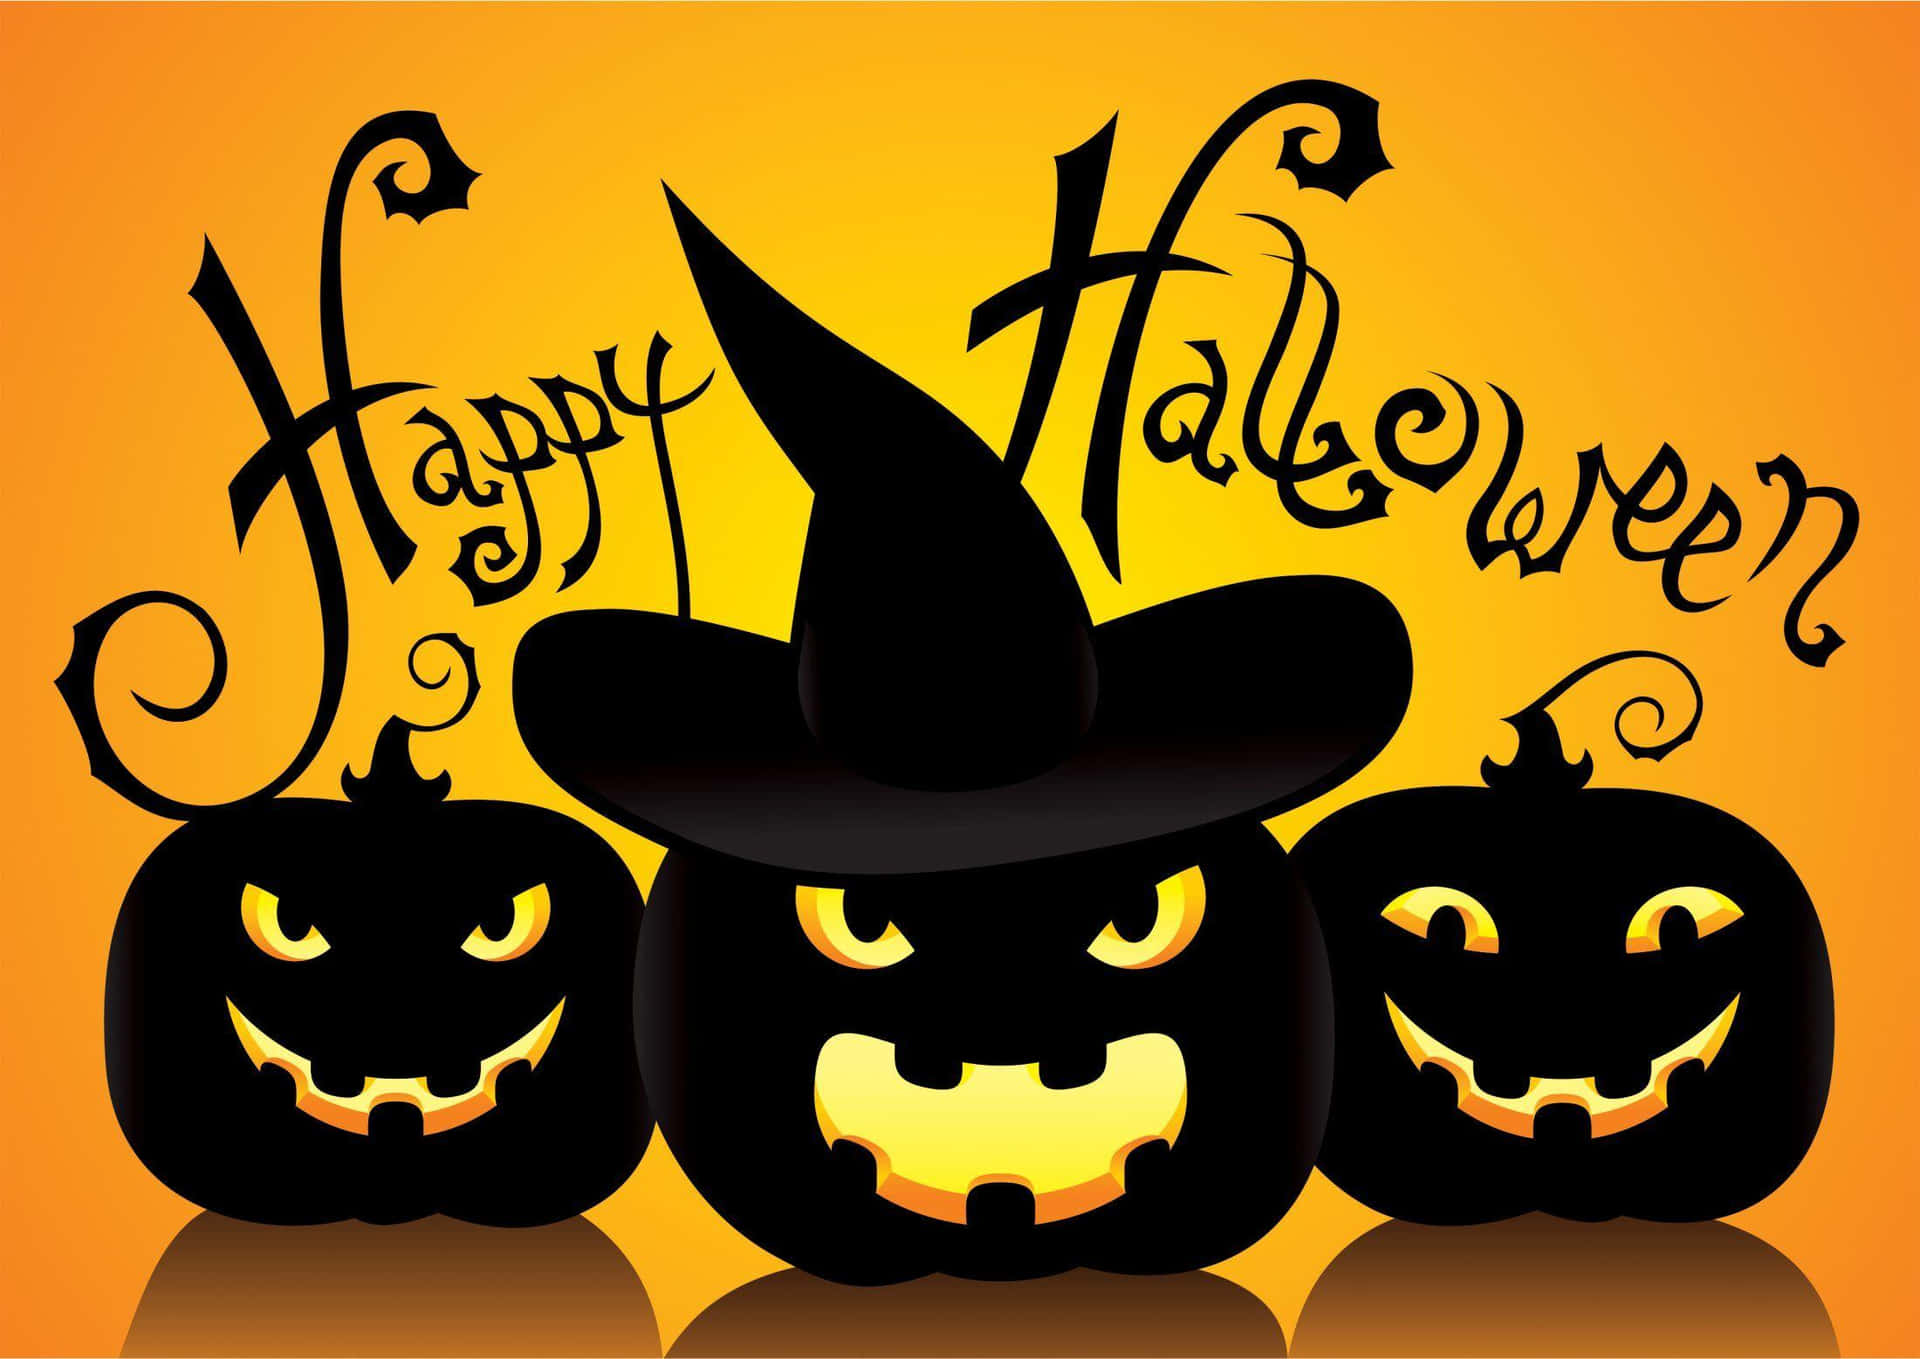 Imagende Calabazas Negras De Halloween En Estilo De Dibujos Animados